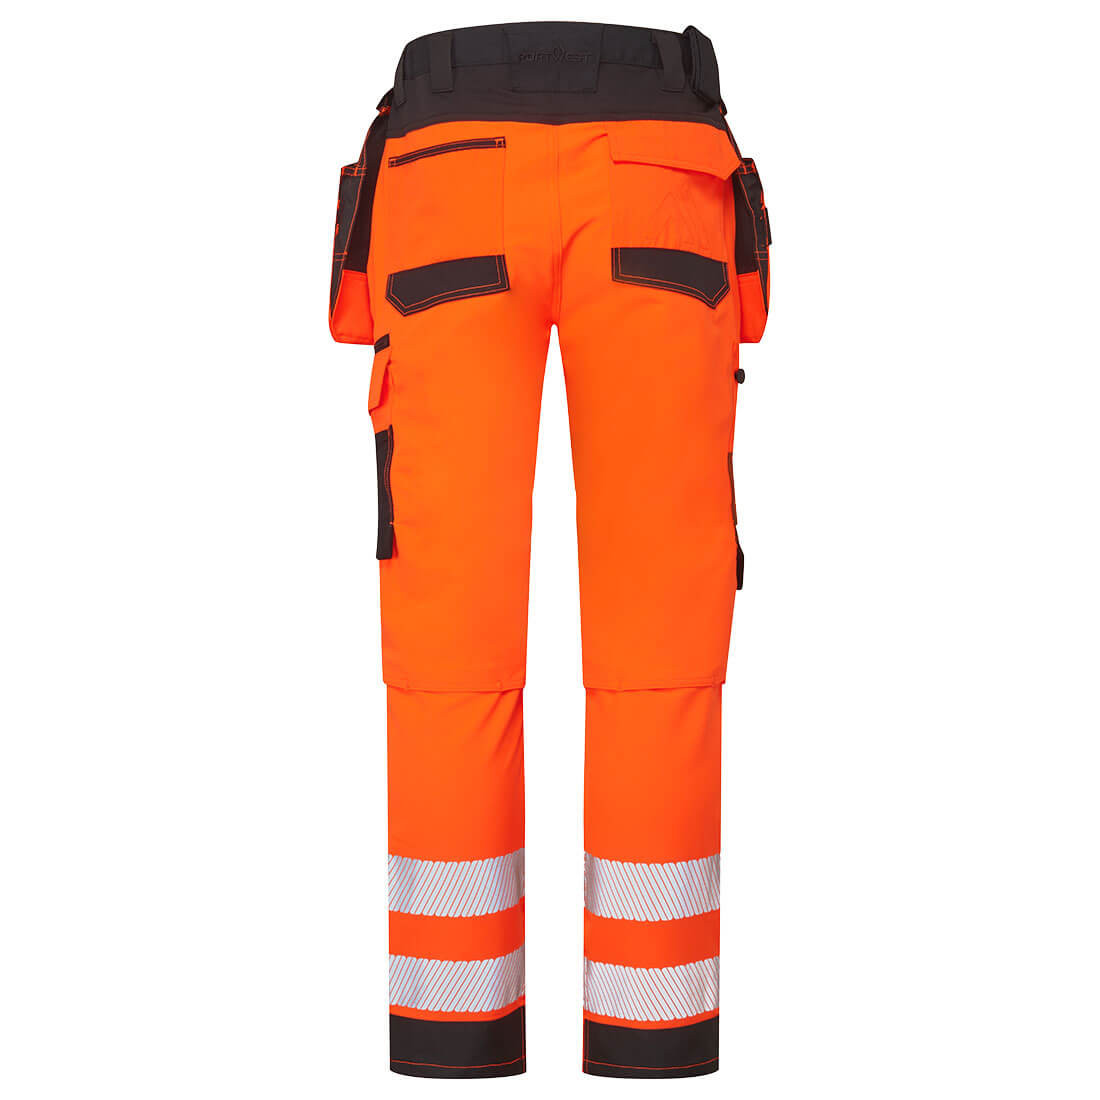 Pantalones de alta visibilidad DX4 Hi-Vis Craft - Ropa de protección